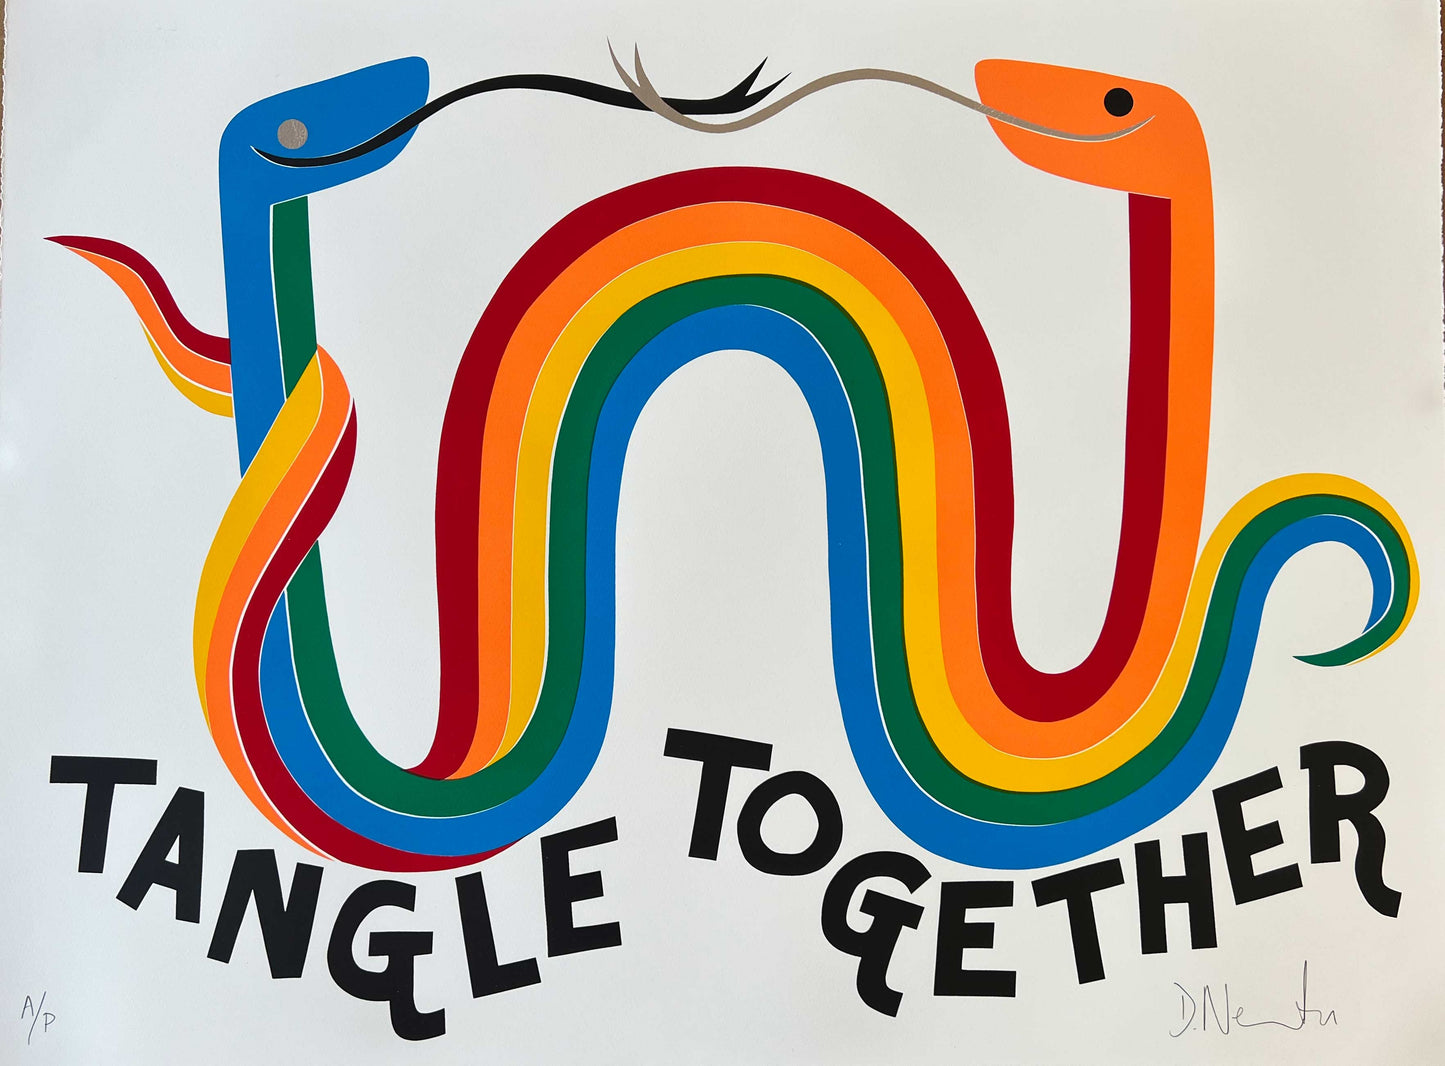 Tangle Together / David Newton